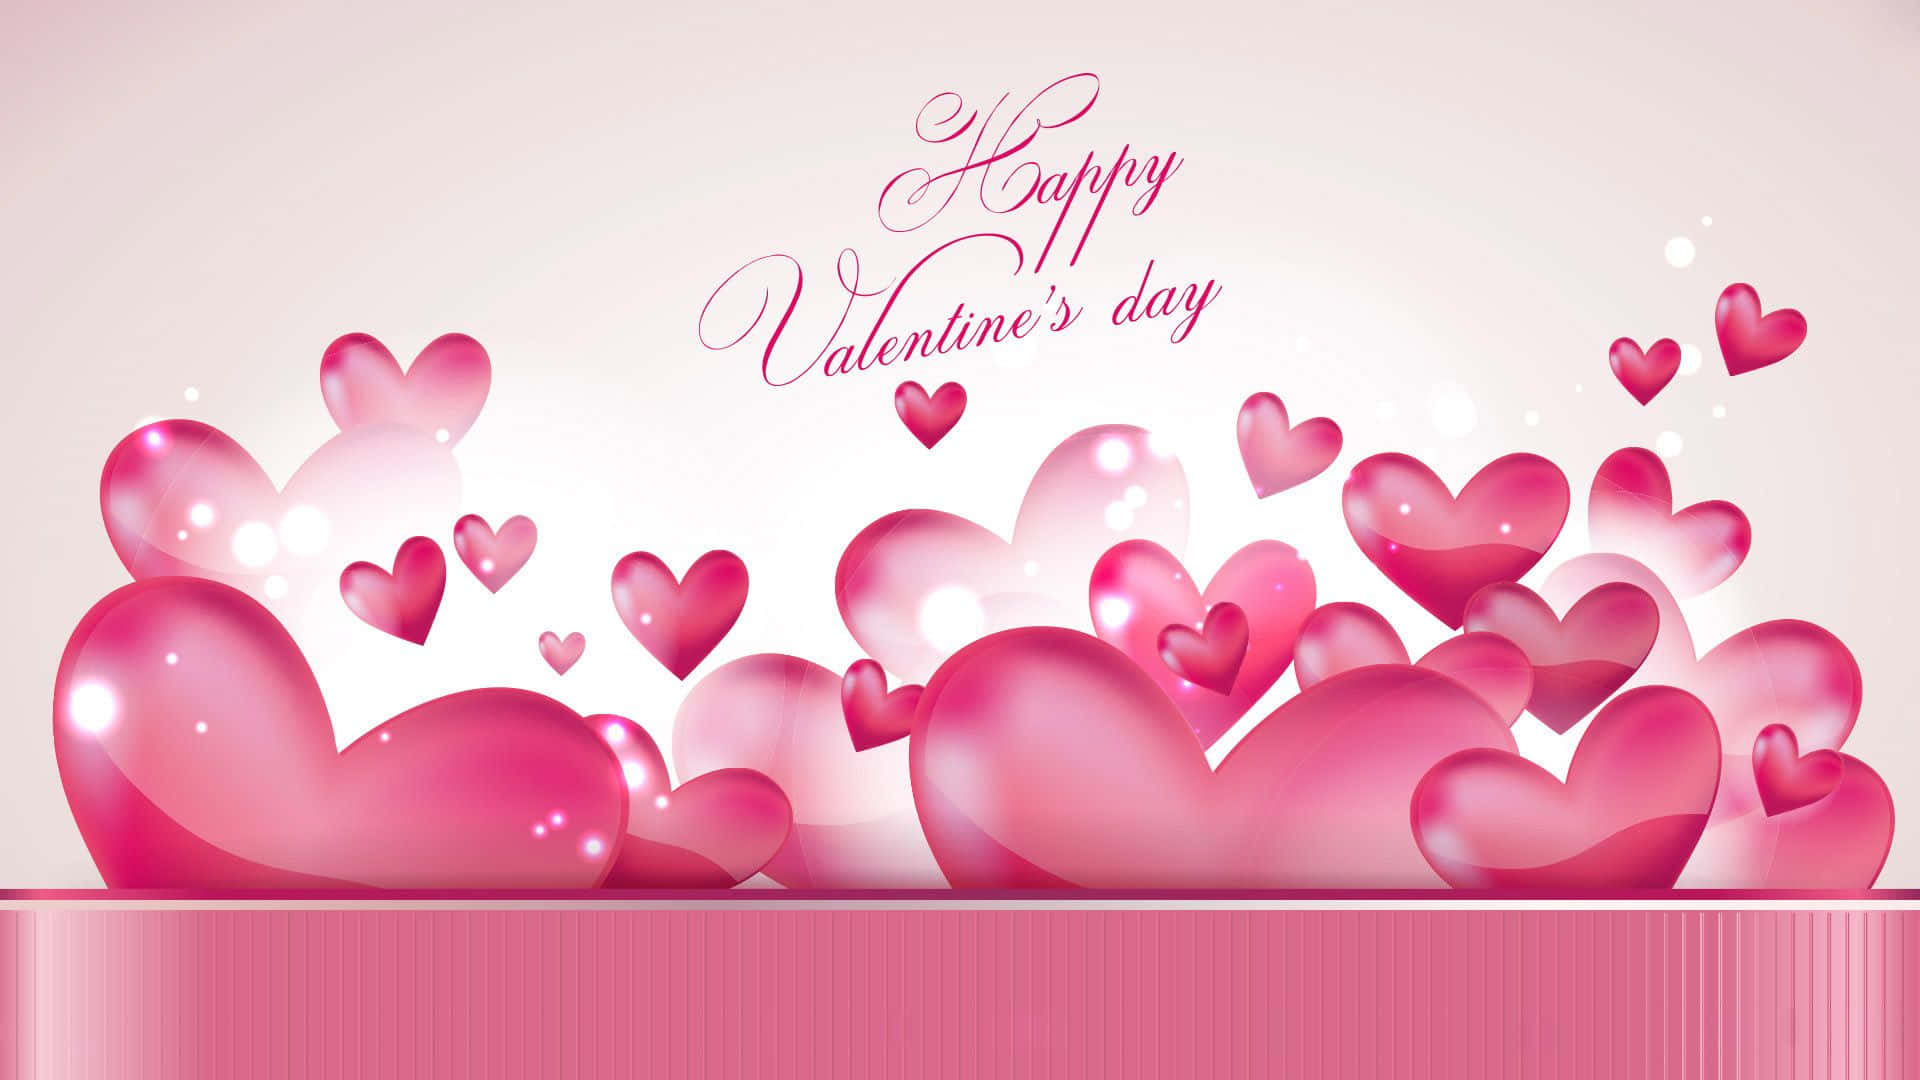 Celebrael Amor En El Día De San Valentín Con Esta Preciosa Imagen En Hd. Fondo de pantalla